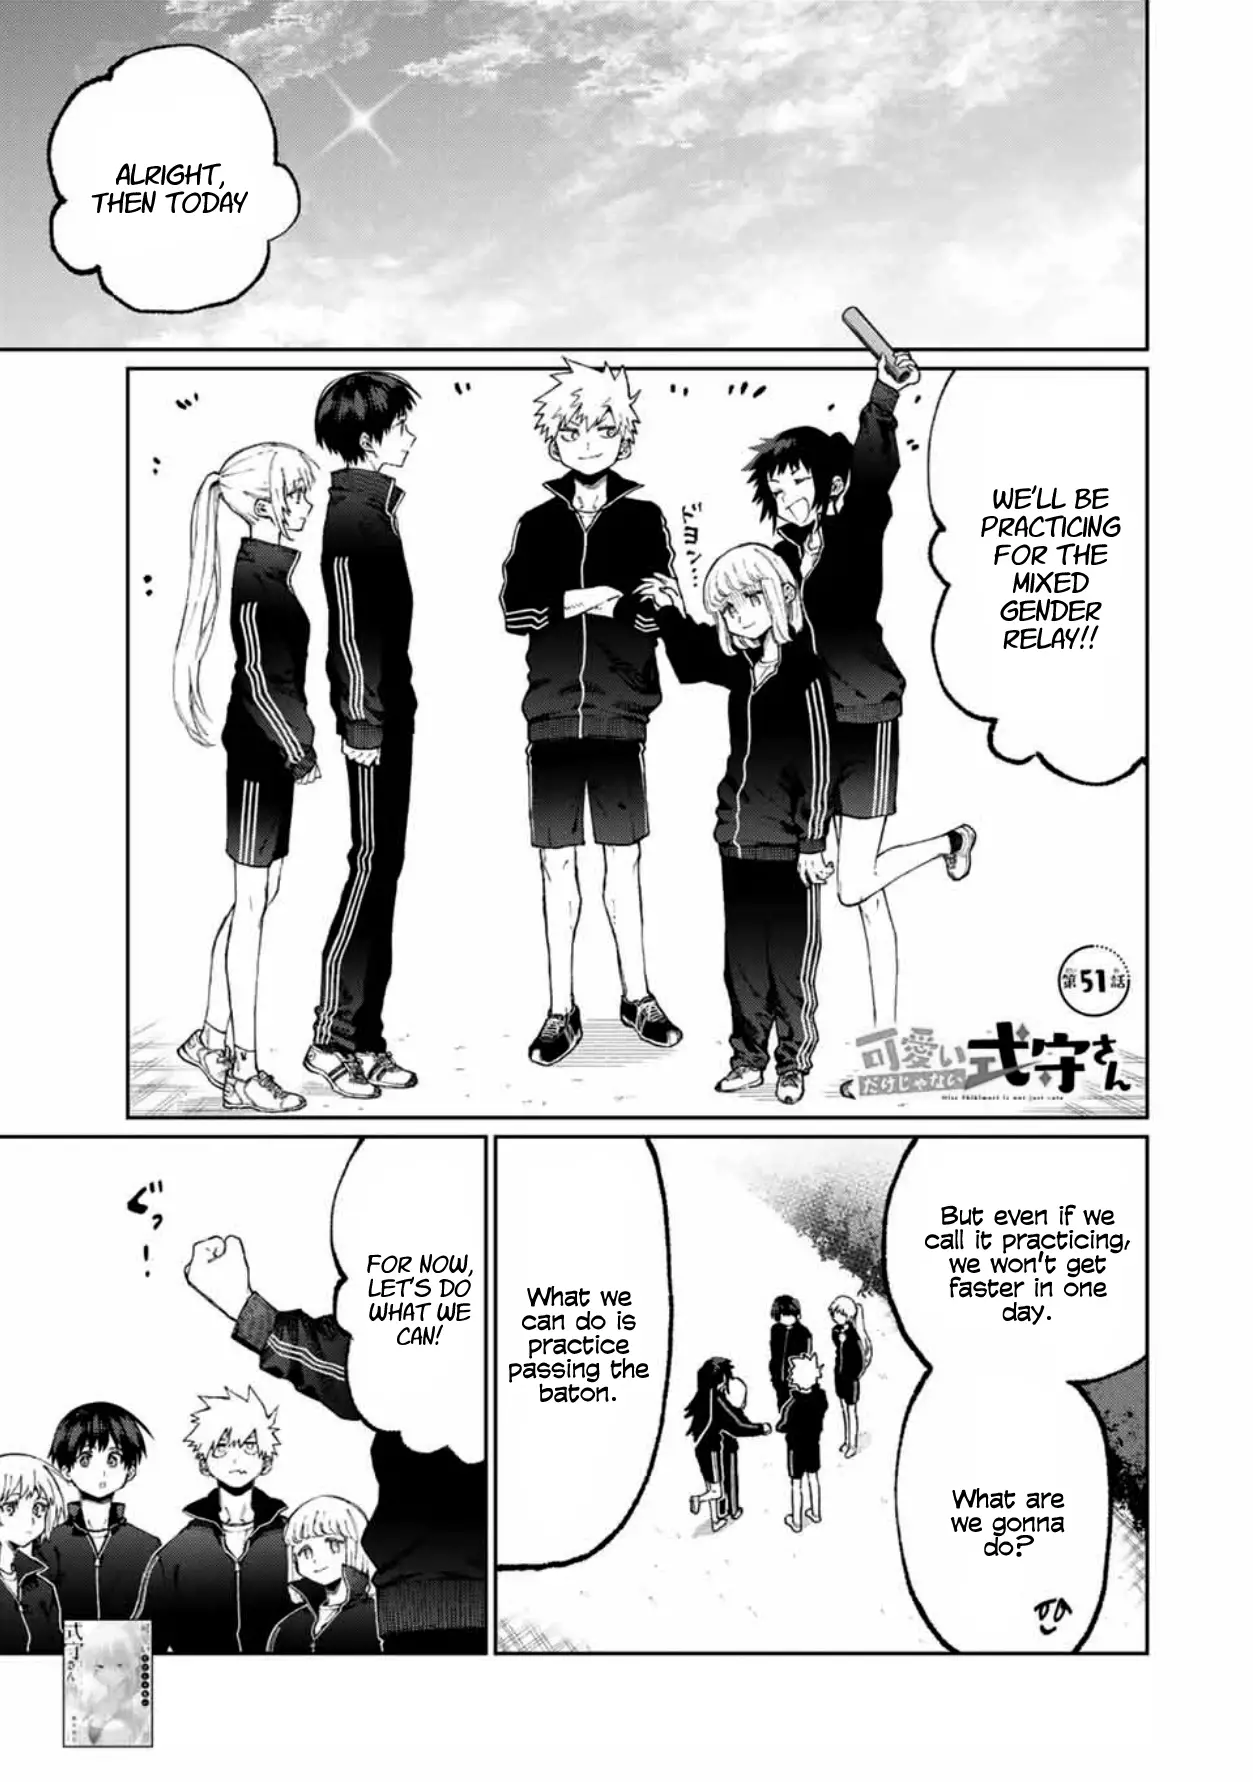 Shikimori's Not Just A Cutie - 51 page 1